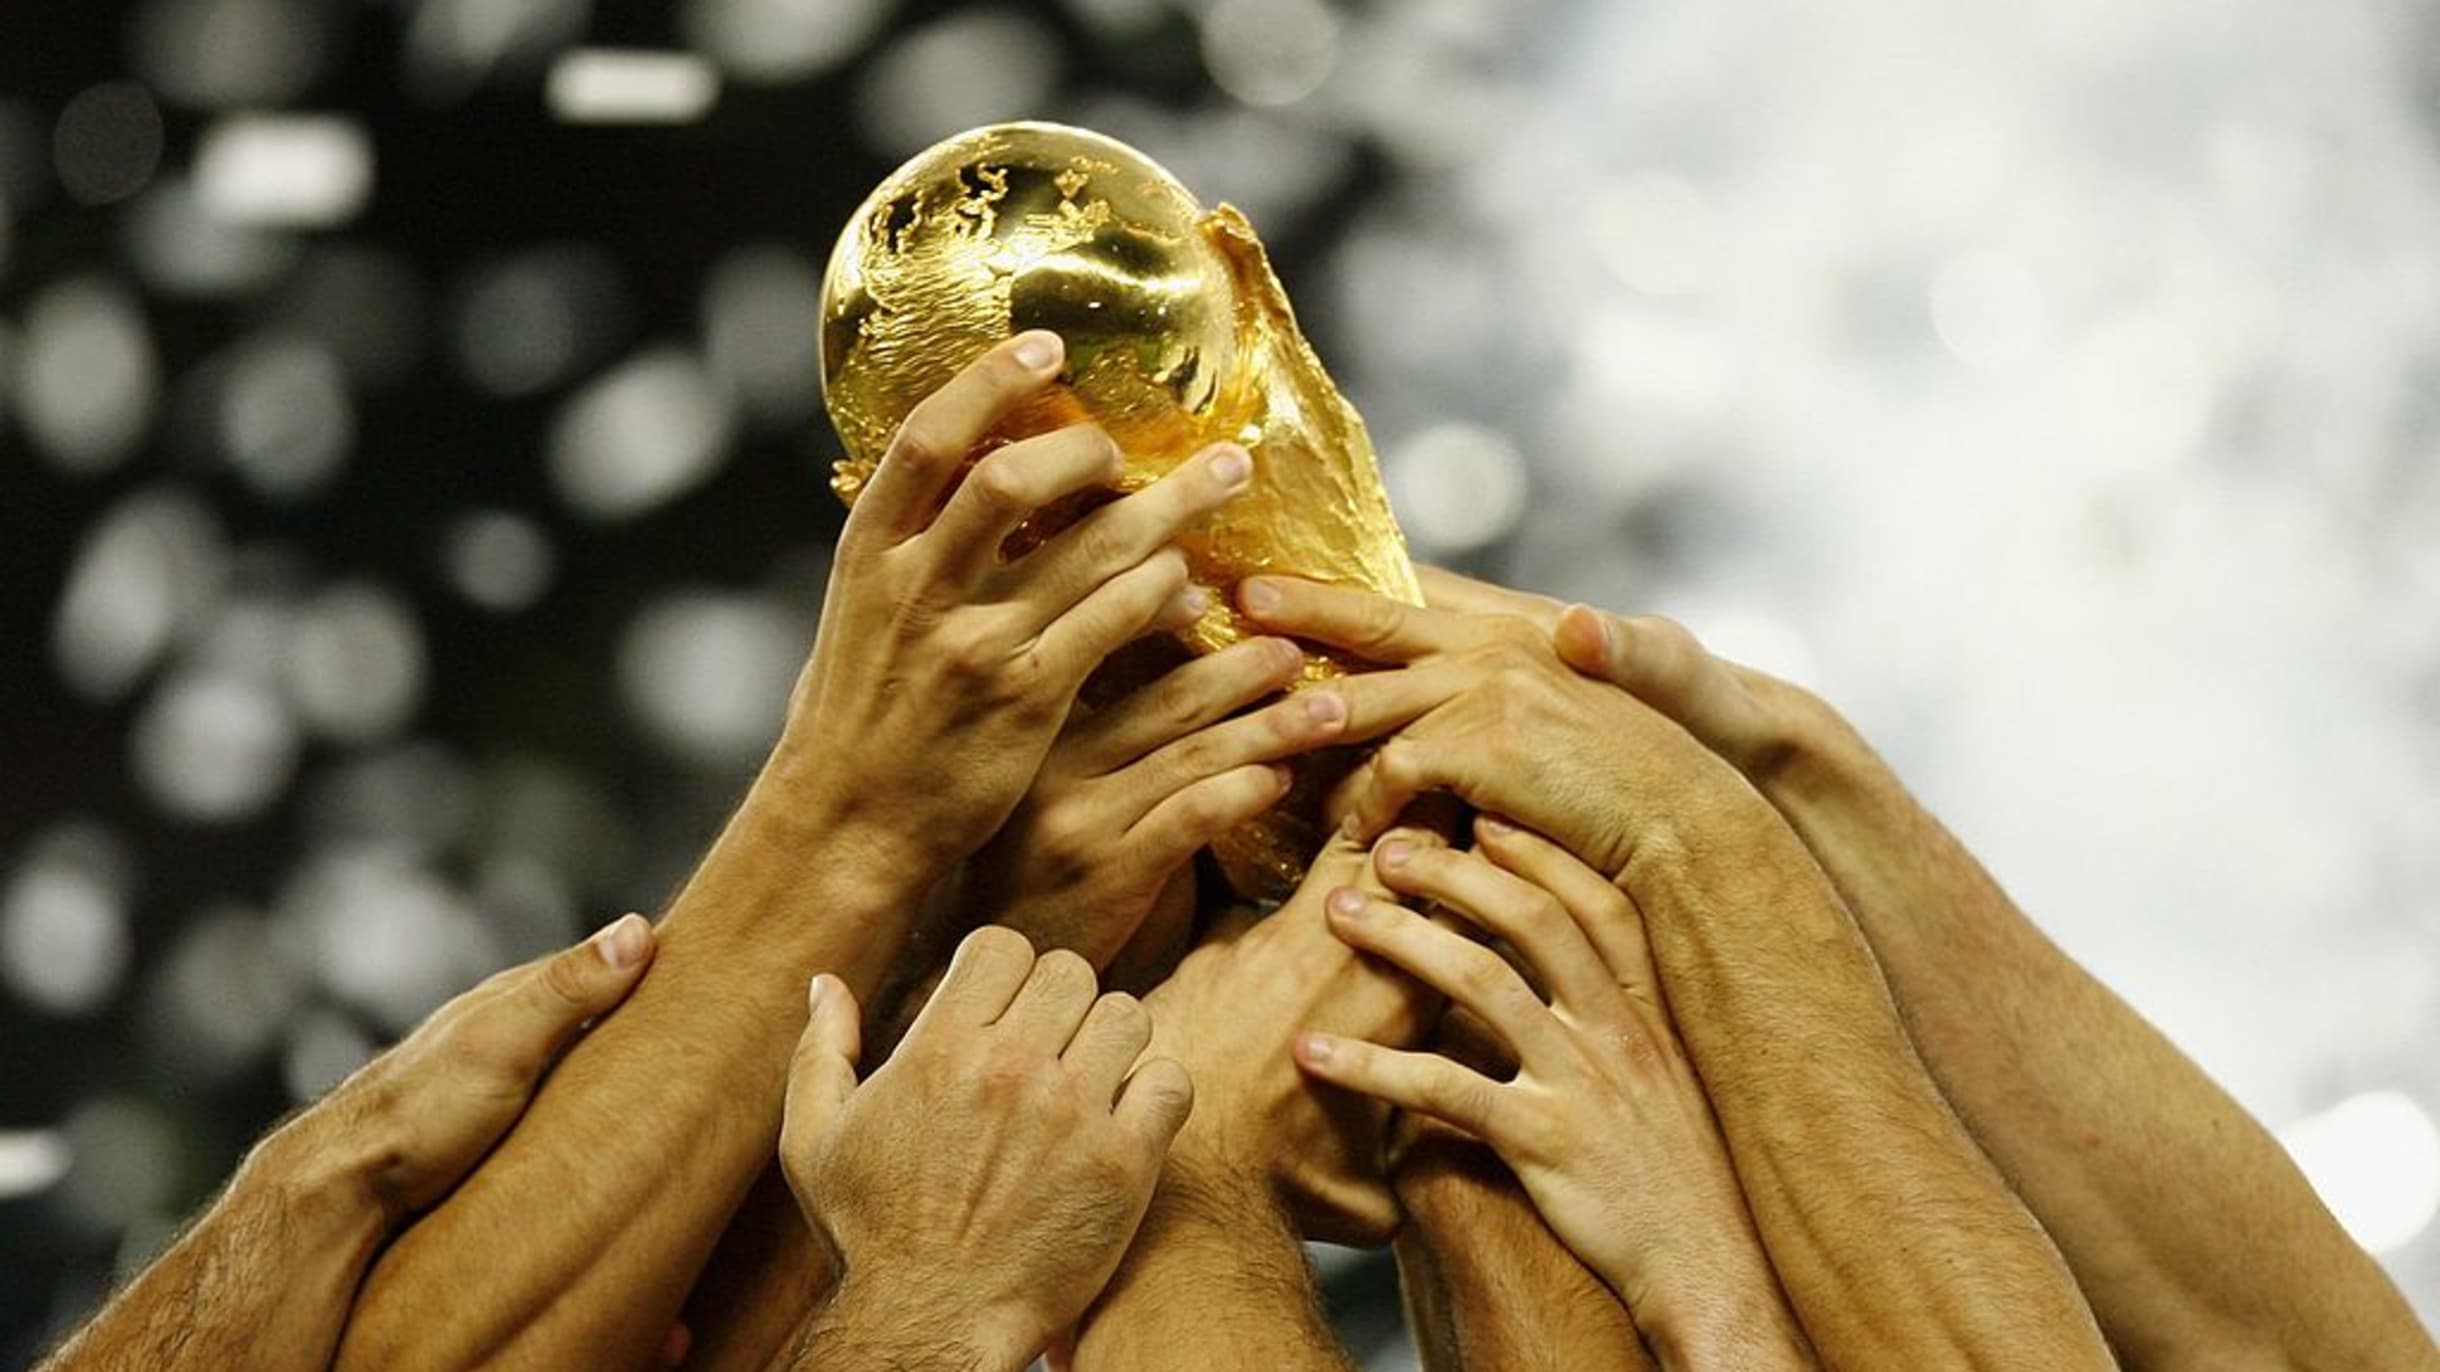 Trophée de la Coupe du monde de football — Wikipédia